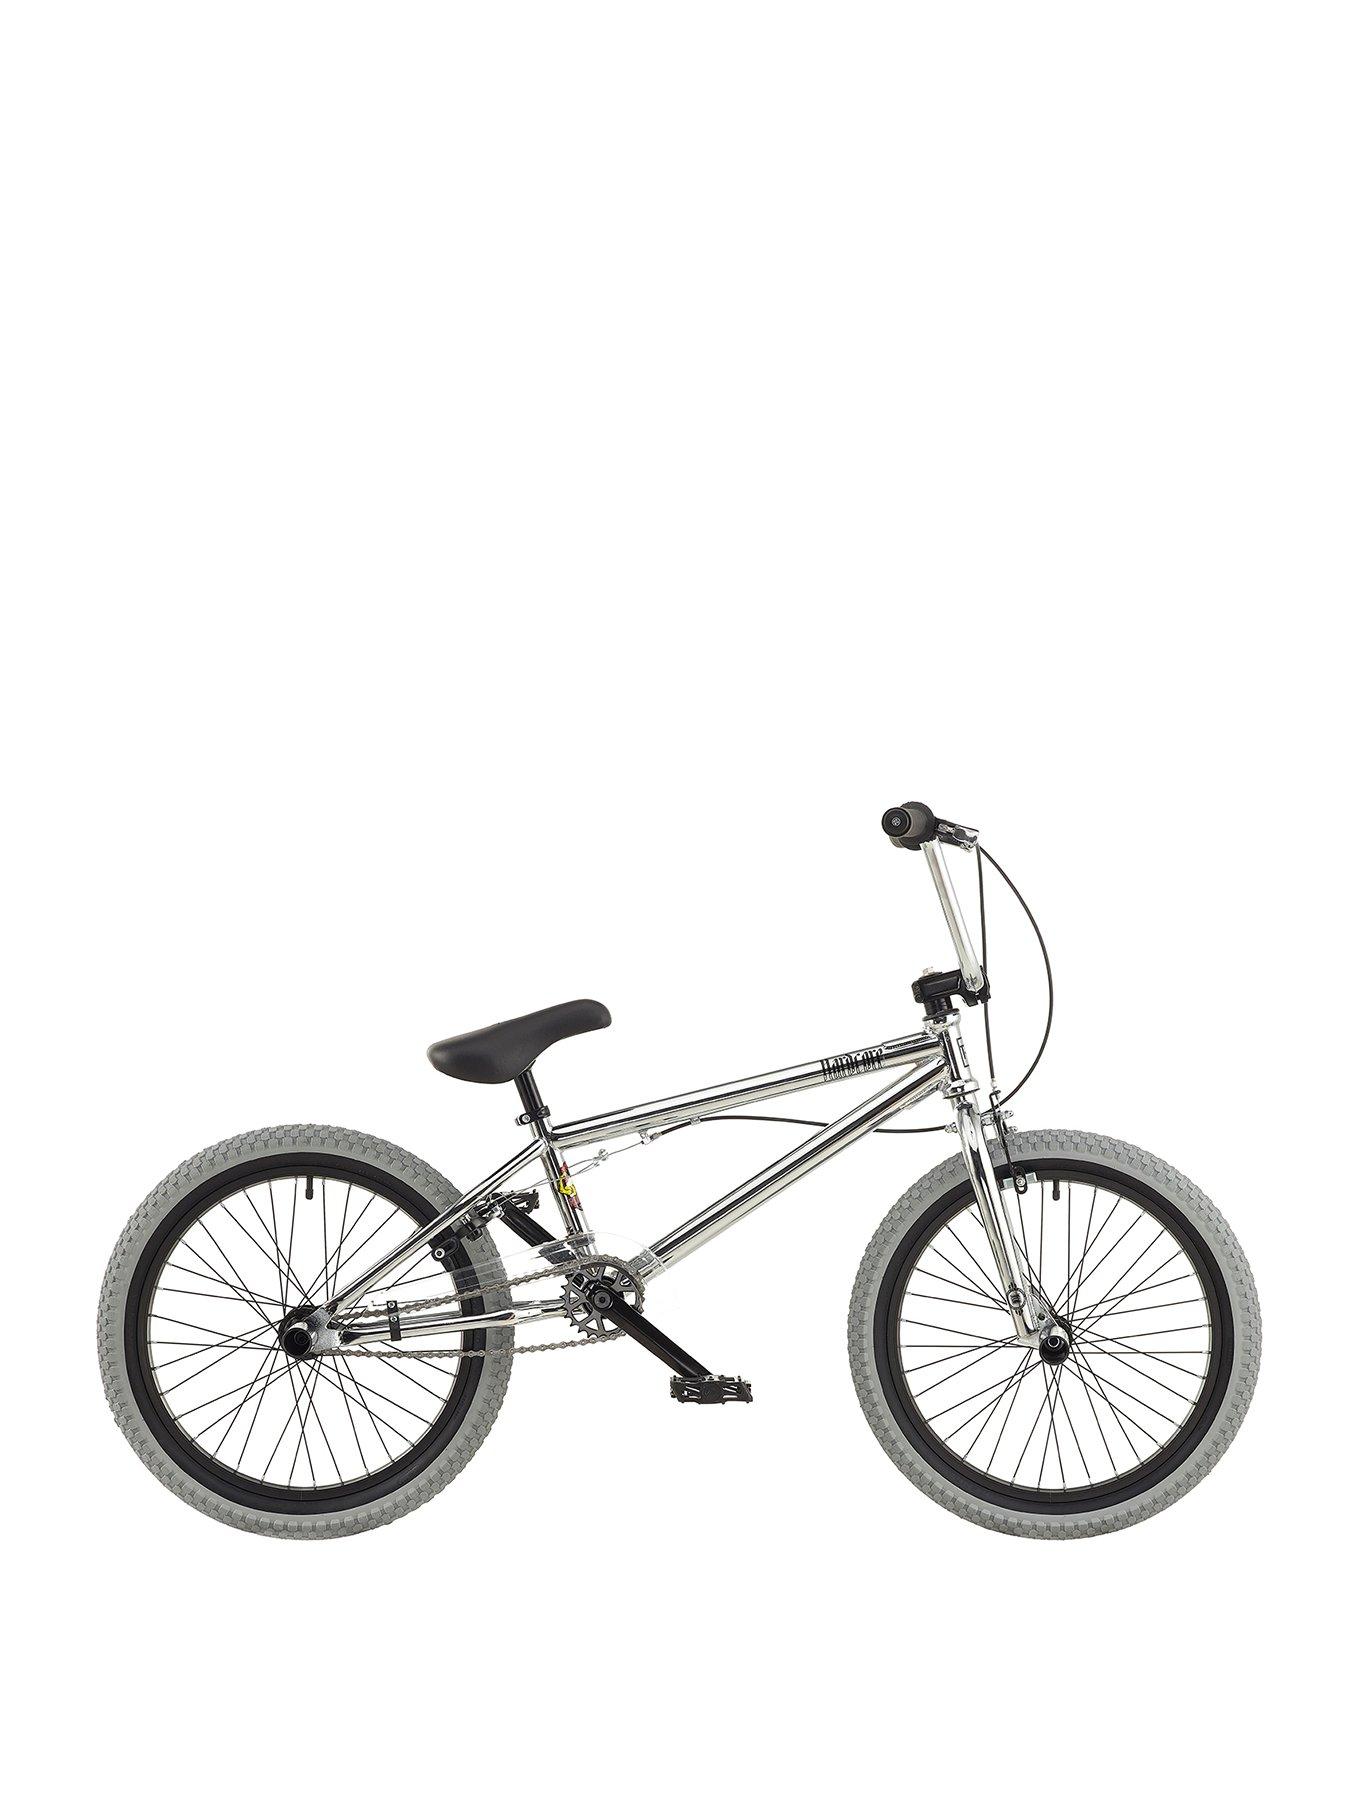 barracuda bmx bike